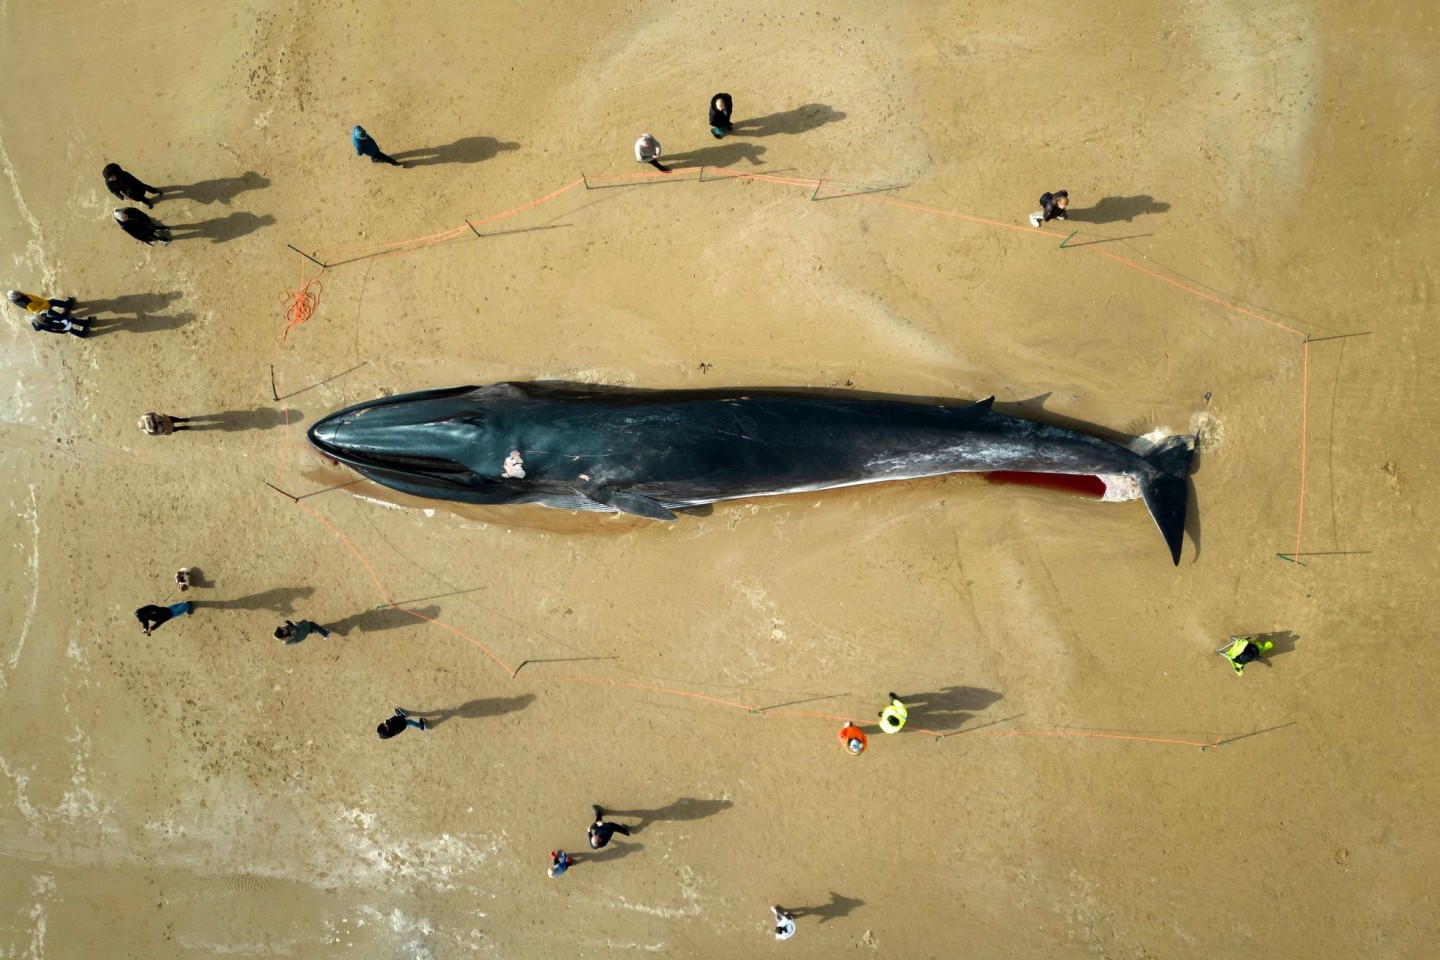 Menschen stehen am Kadaver eines 17 Meter langen Finnwals (Balaenoptera physalus), der am Strand in East Yorkshire liegt.